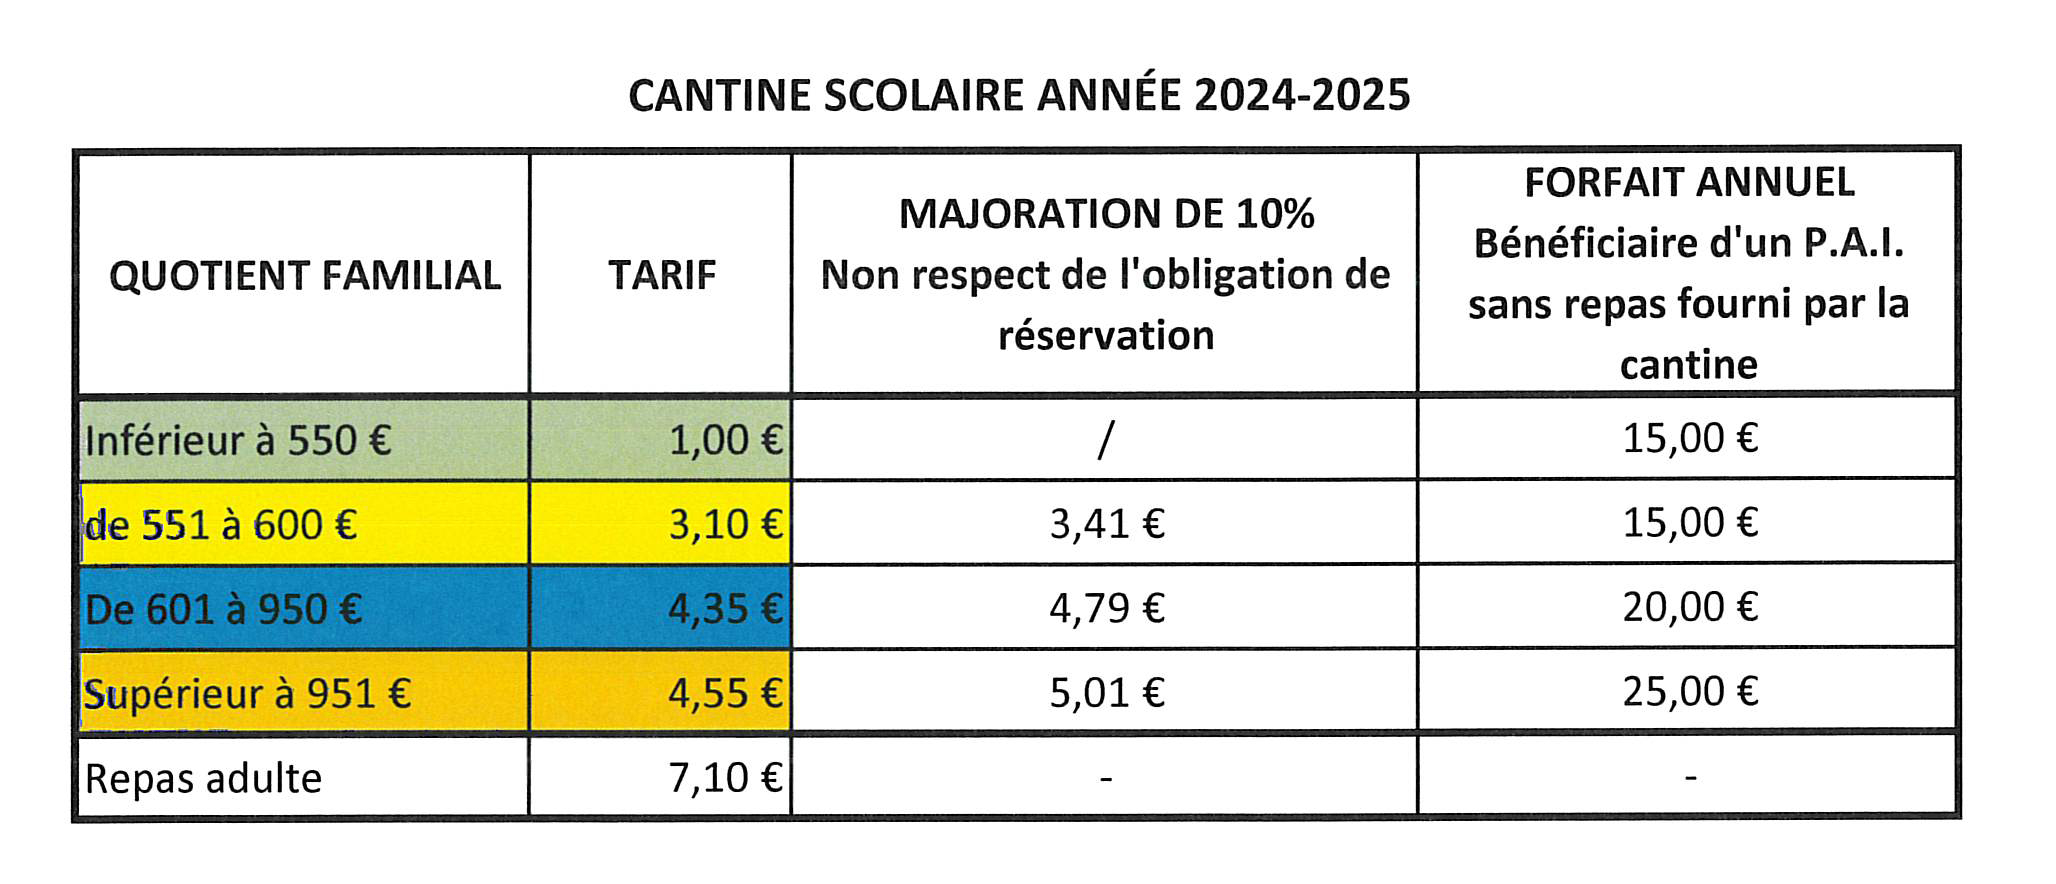 TARIFS CANTINE par quotient familal 2024-2025.jpg